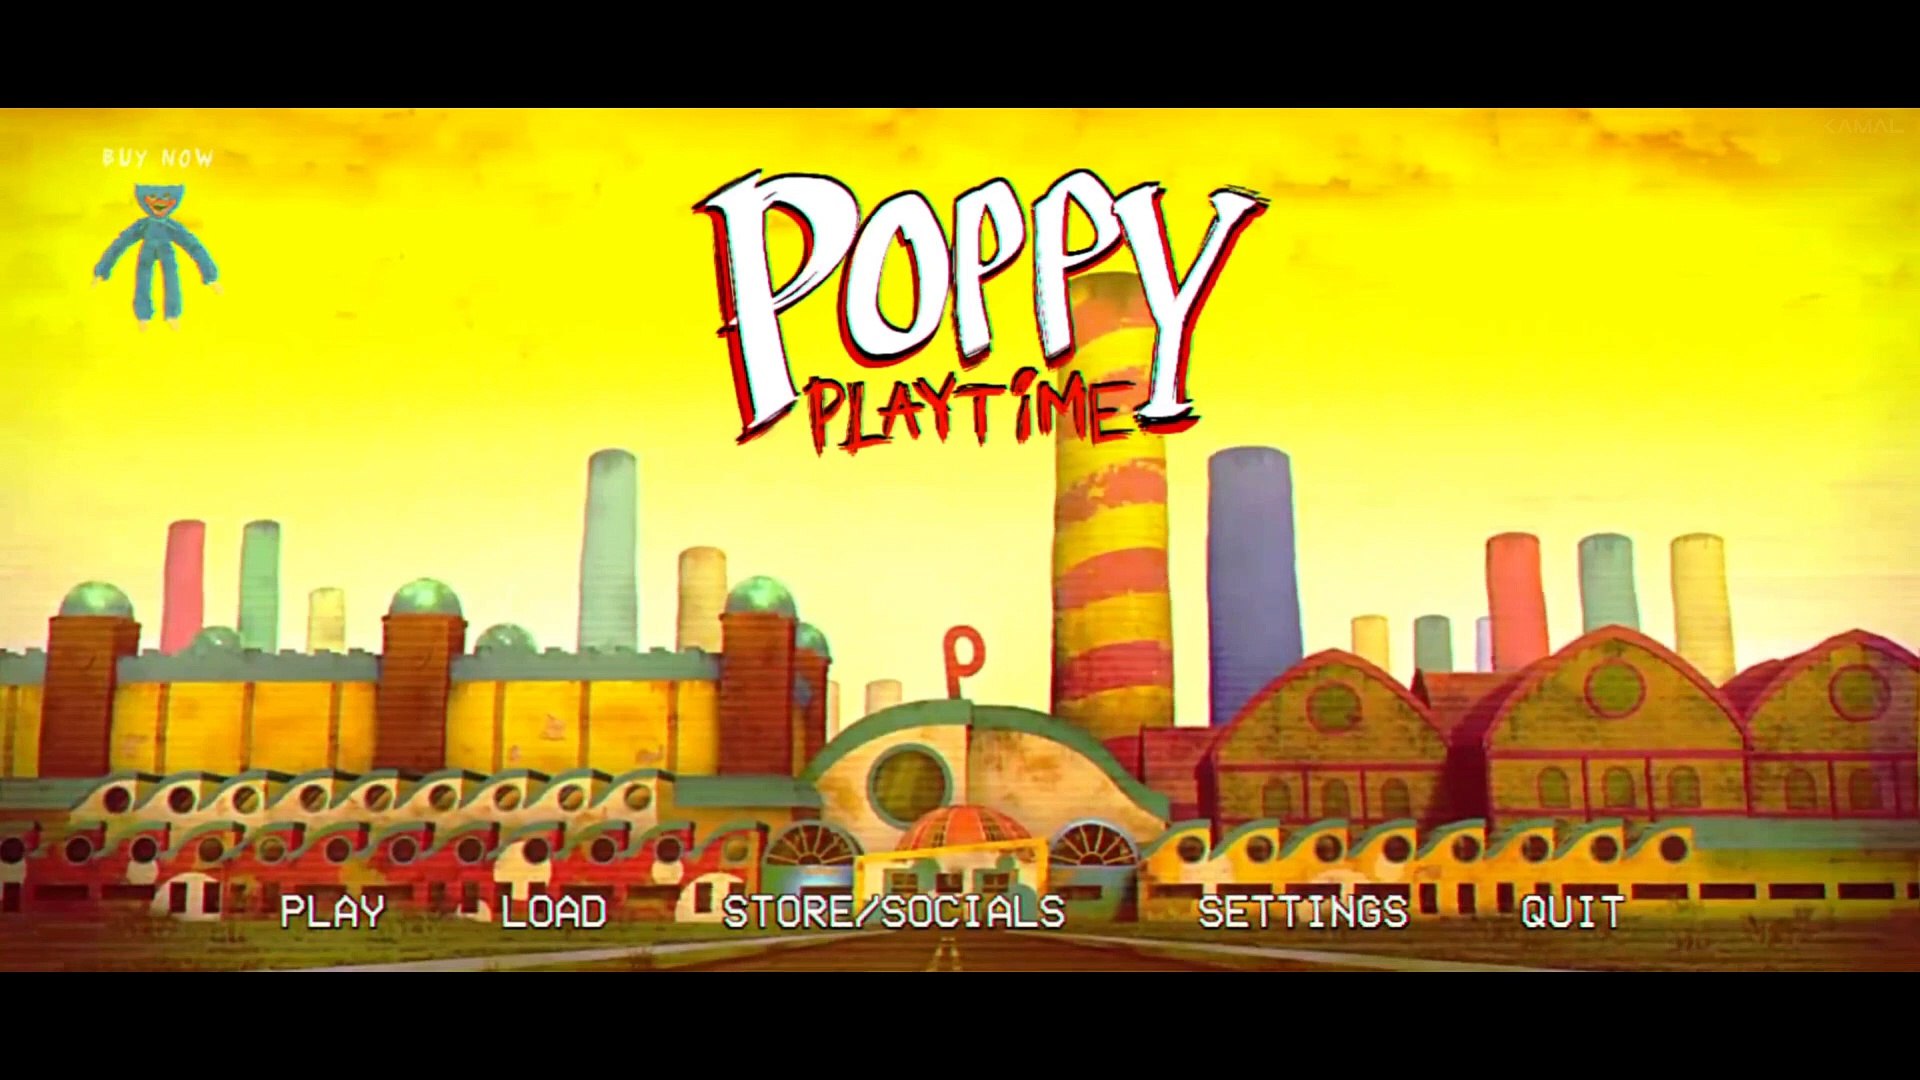 Poppy Playtime trailer #1 - video Dailymotion